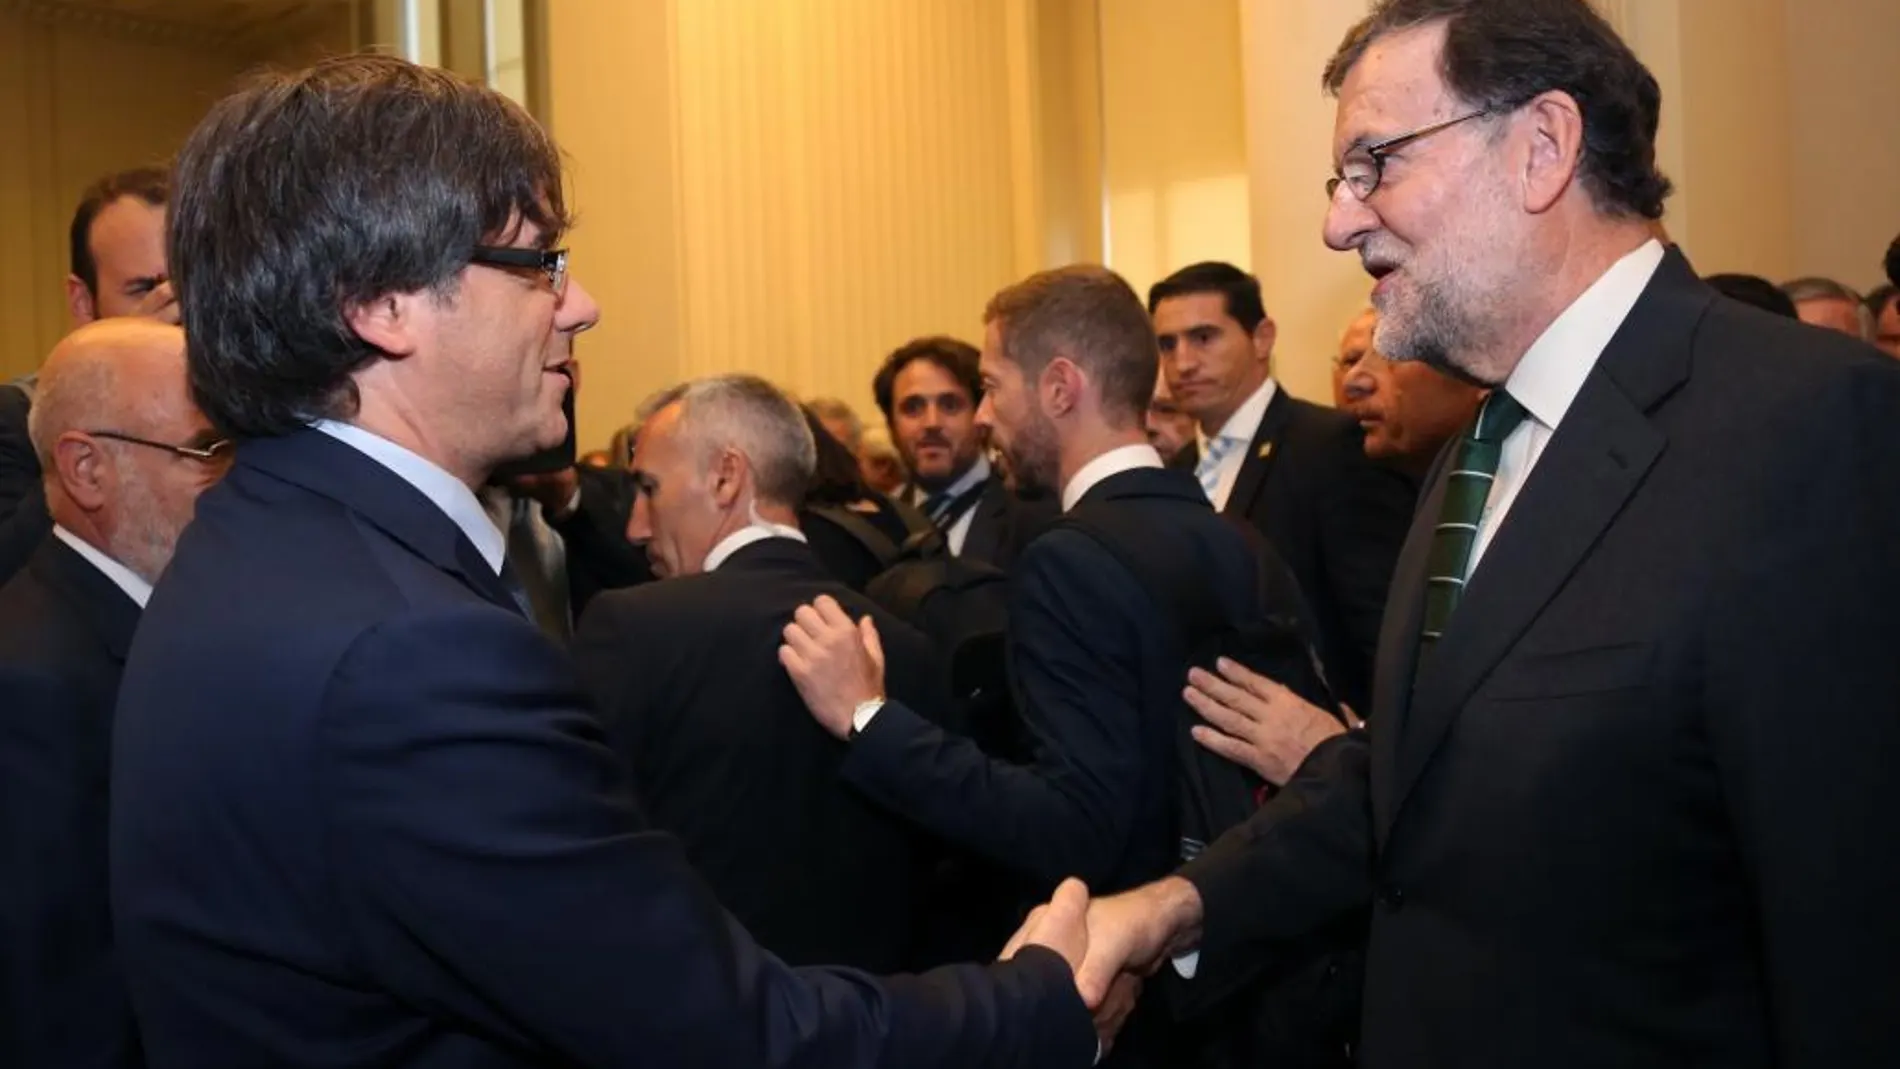 Mariano Rajoy y Carles Puigdemon durante su breve saludo en Oporto